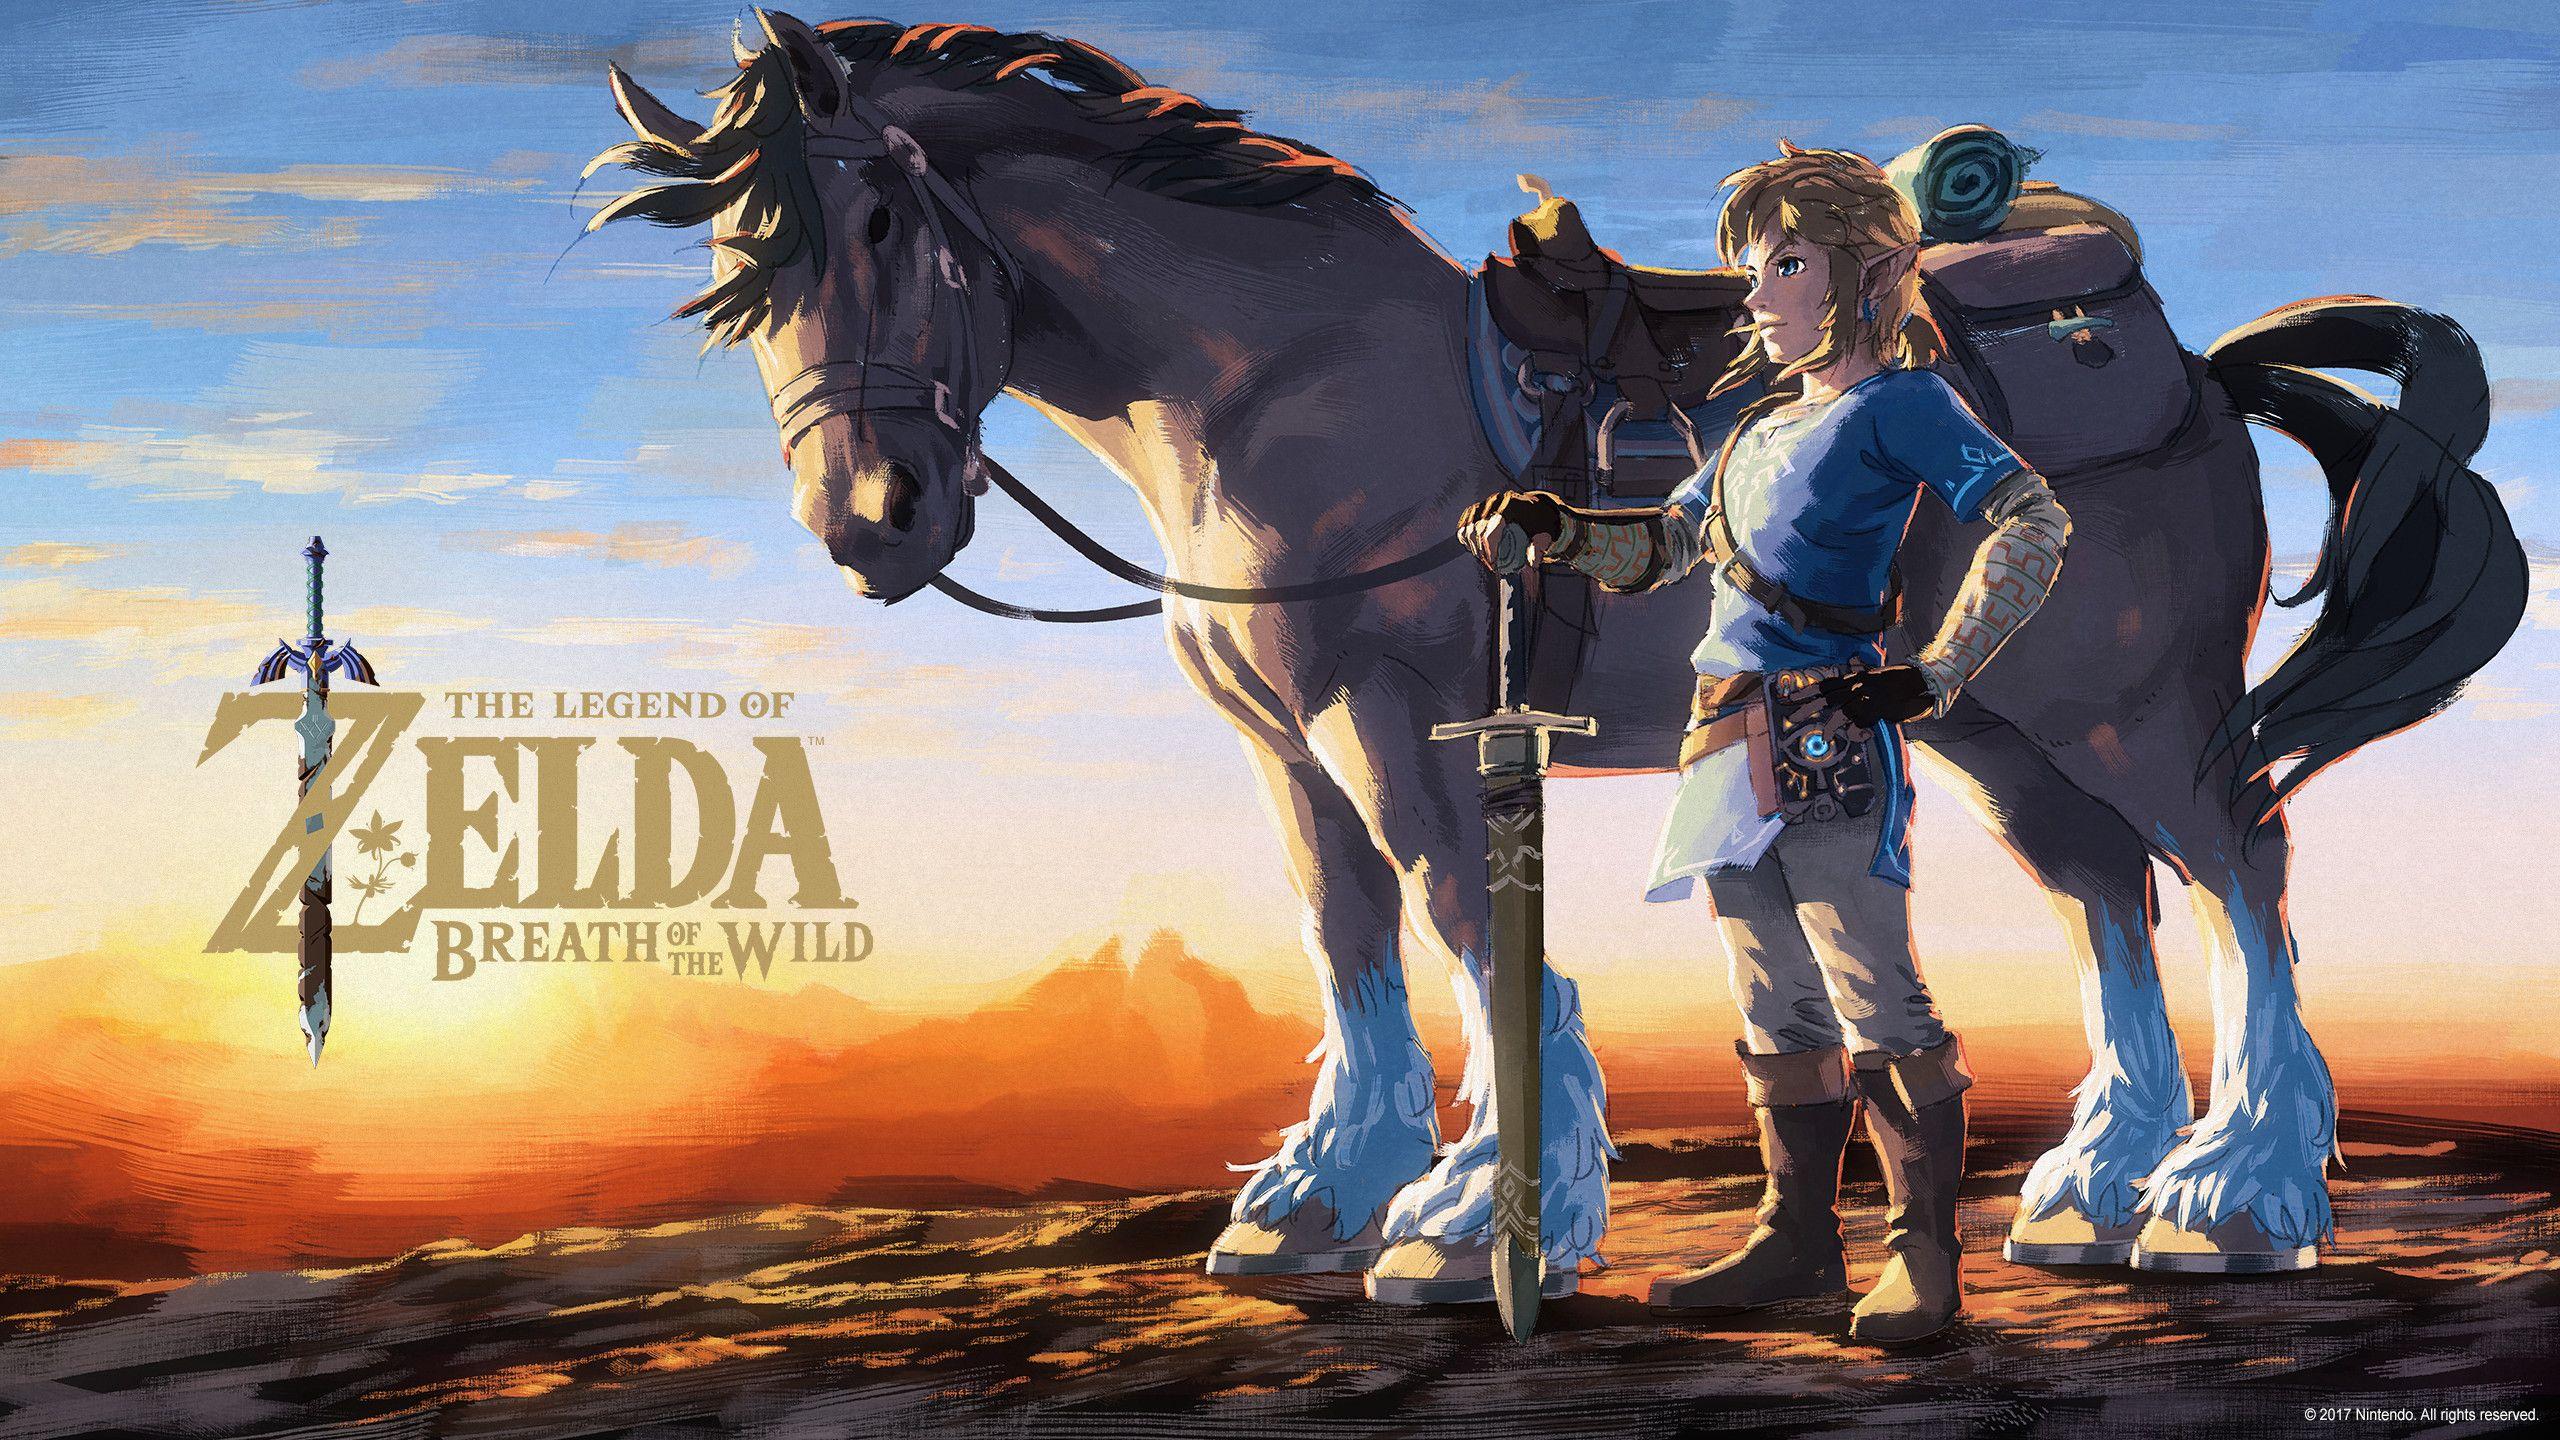 2560x1440 Tải xuống miễn phí The Legend of Zelda Breath of the Wild Hình nền HD 12 2560 X [2560x1440] cho Máy tính để bàn, Di động & Máy tính bảng của bạn.  Khám phá Huyền thoại Zelda: Hơi thở của Người